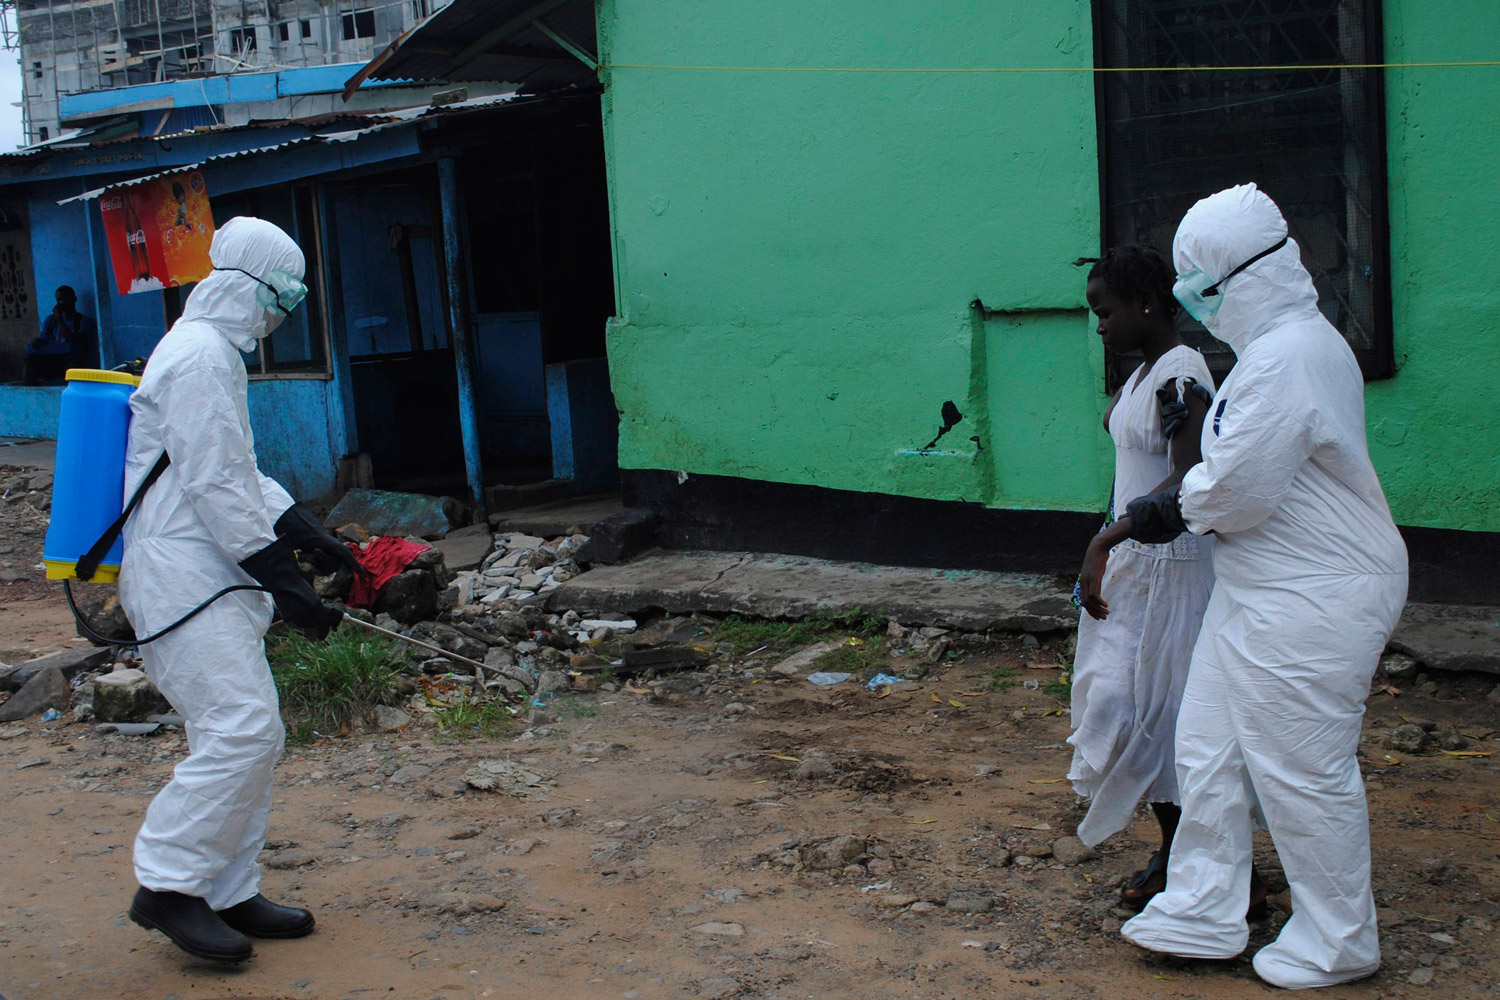 Continúa la epidemia de ébola que ha matado a más de 2.400 personas